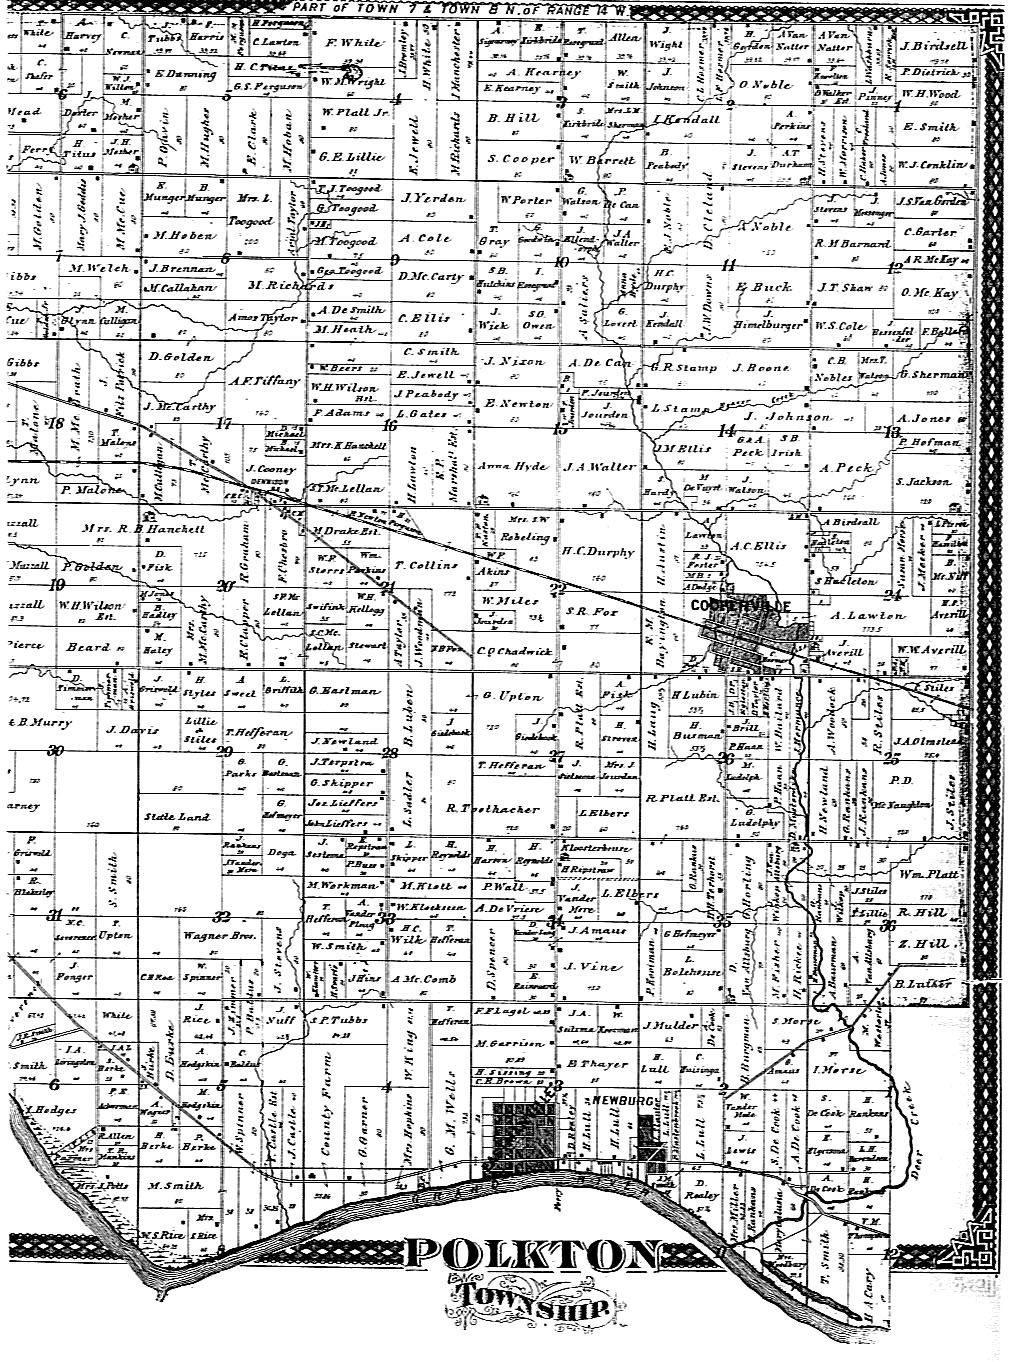 1876 Polkton Township Map